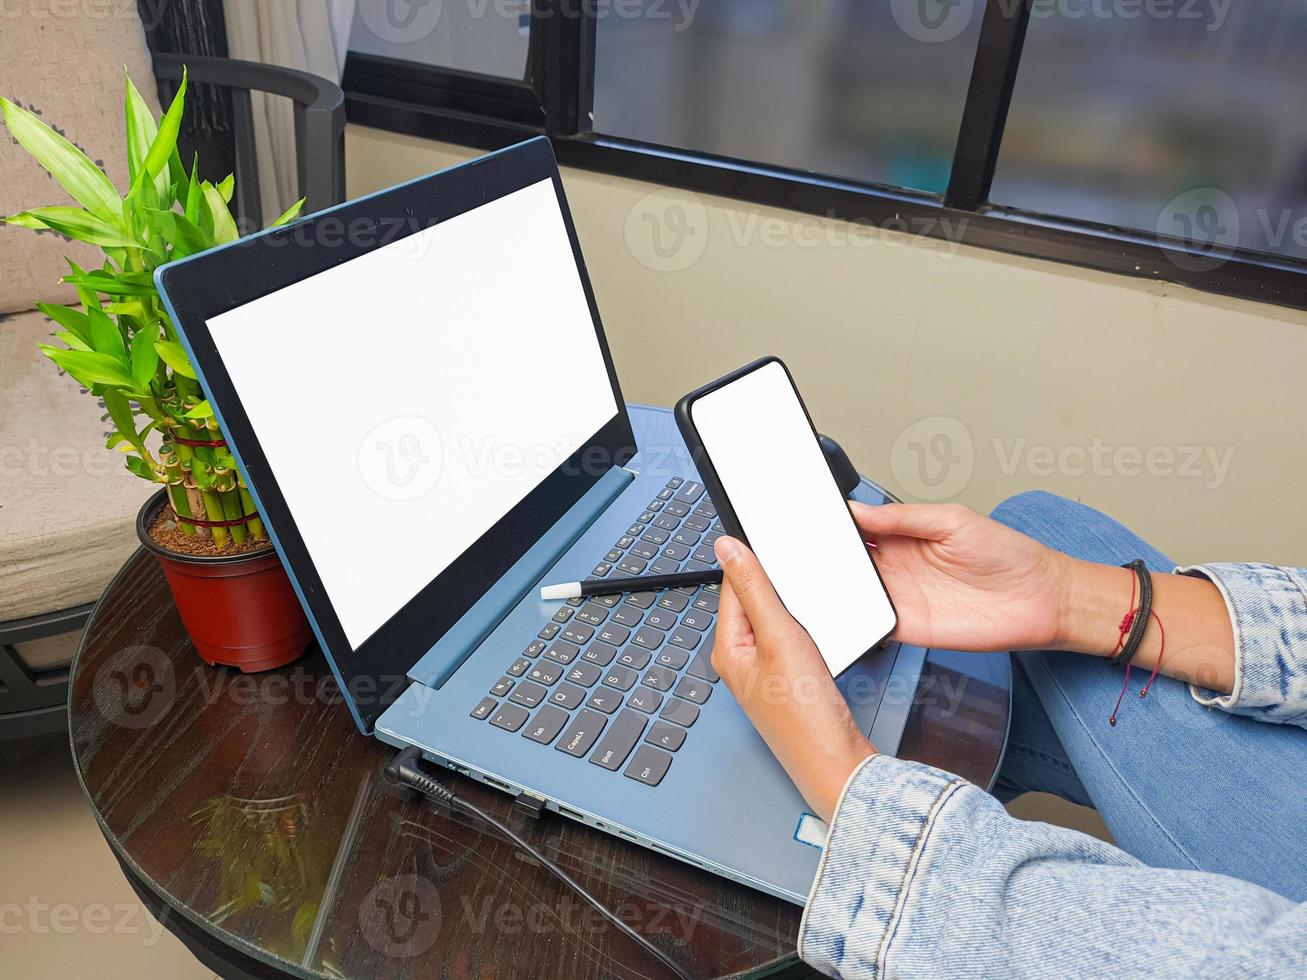 medley B.C. Etna computer, blanco scherm telefoon mockup beeld met wit achtergrond voor  reclame, vrouw hand- gebruik makend van laptop en mobiel telefoon Aan tafel  in café.model 15912567 stockfoto bij Vecteezy